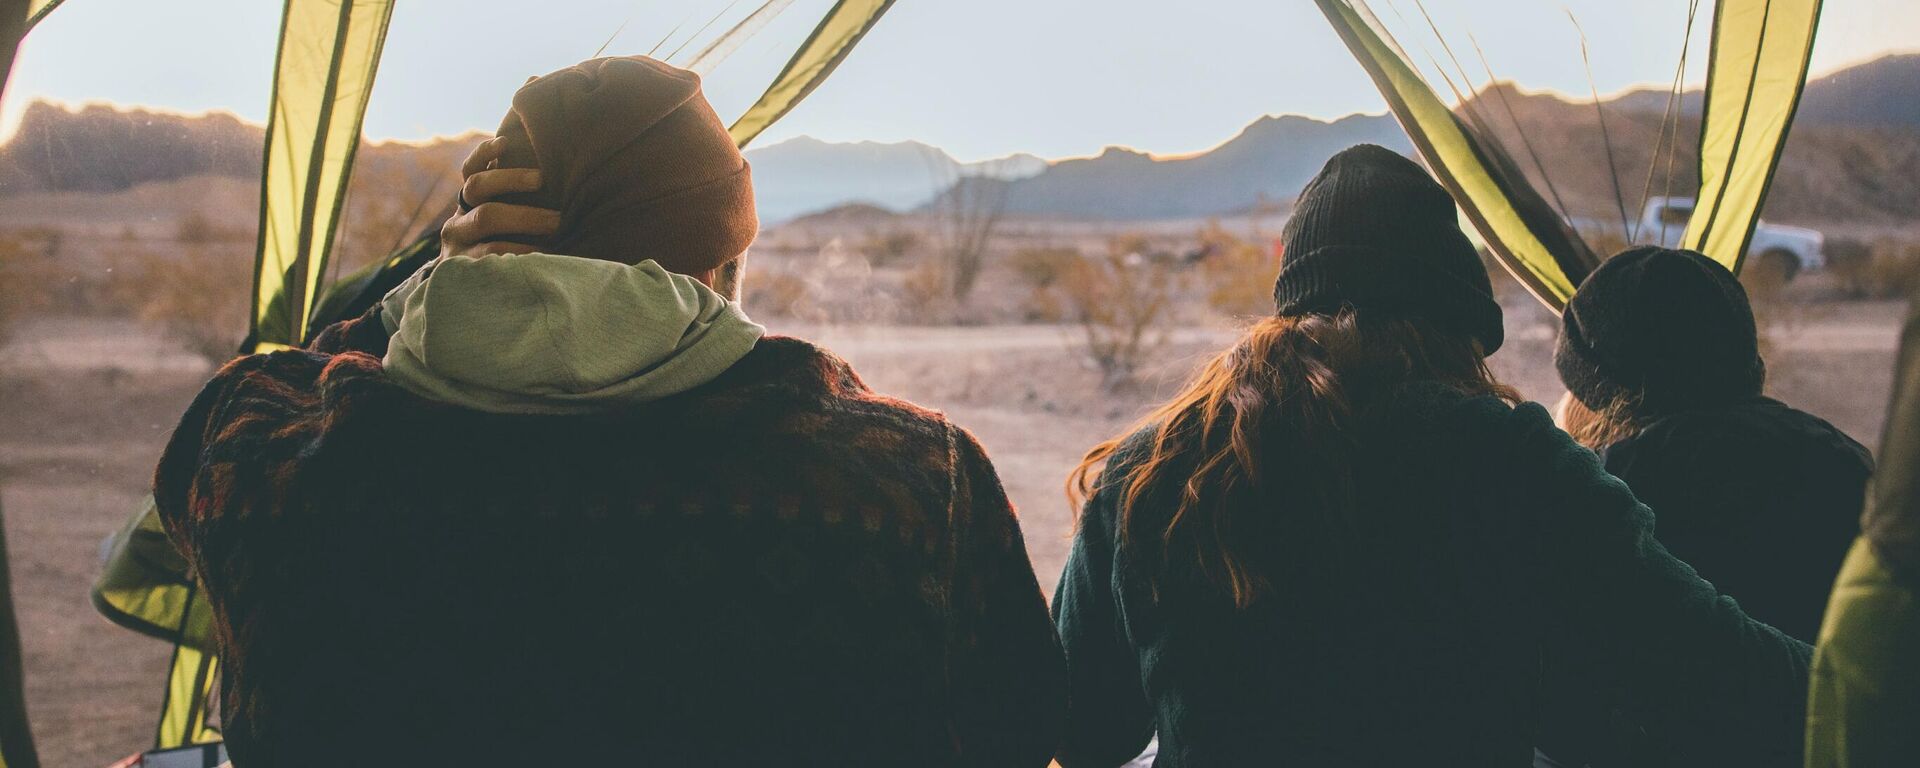 Туристы в палатке - Sputnik Узбекистан, 1920, 08.10.2015